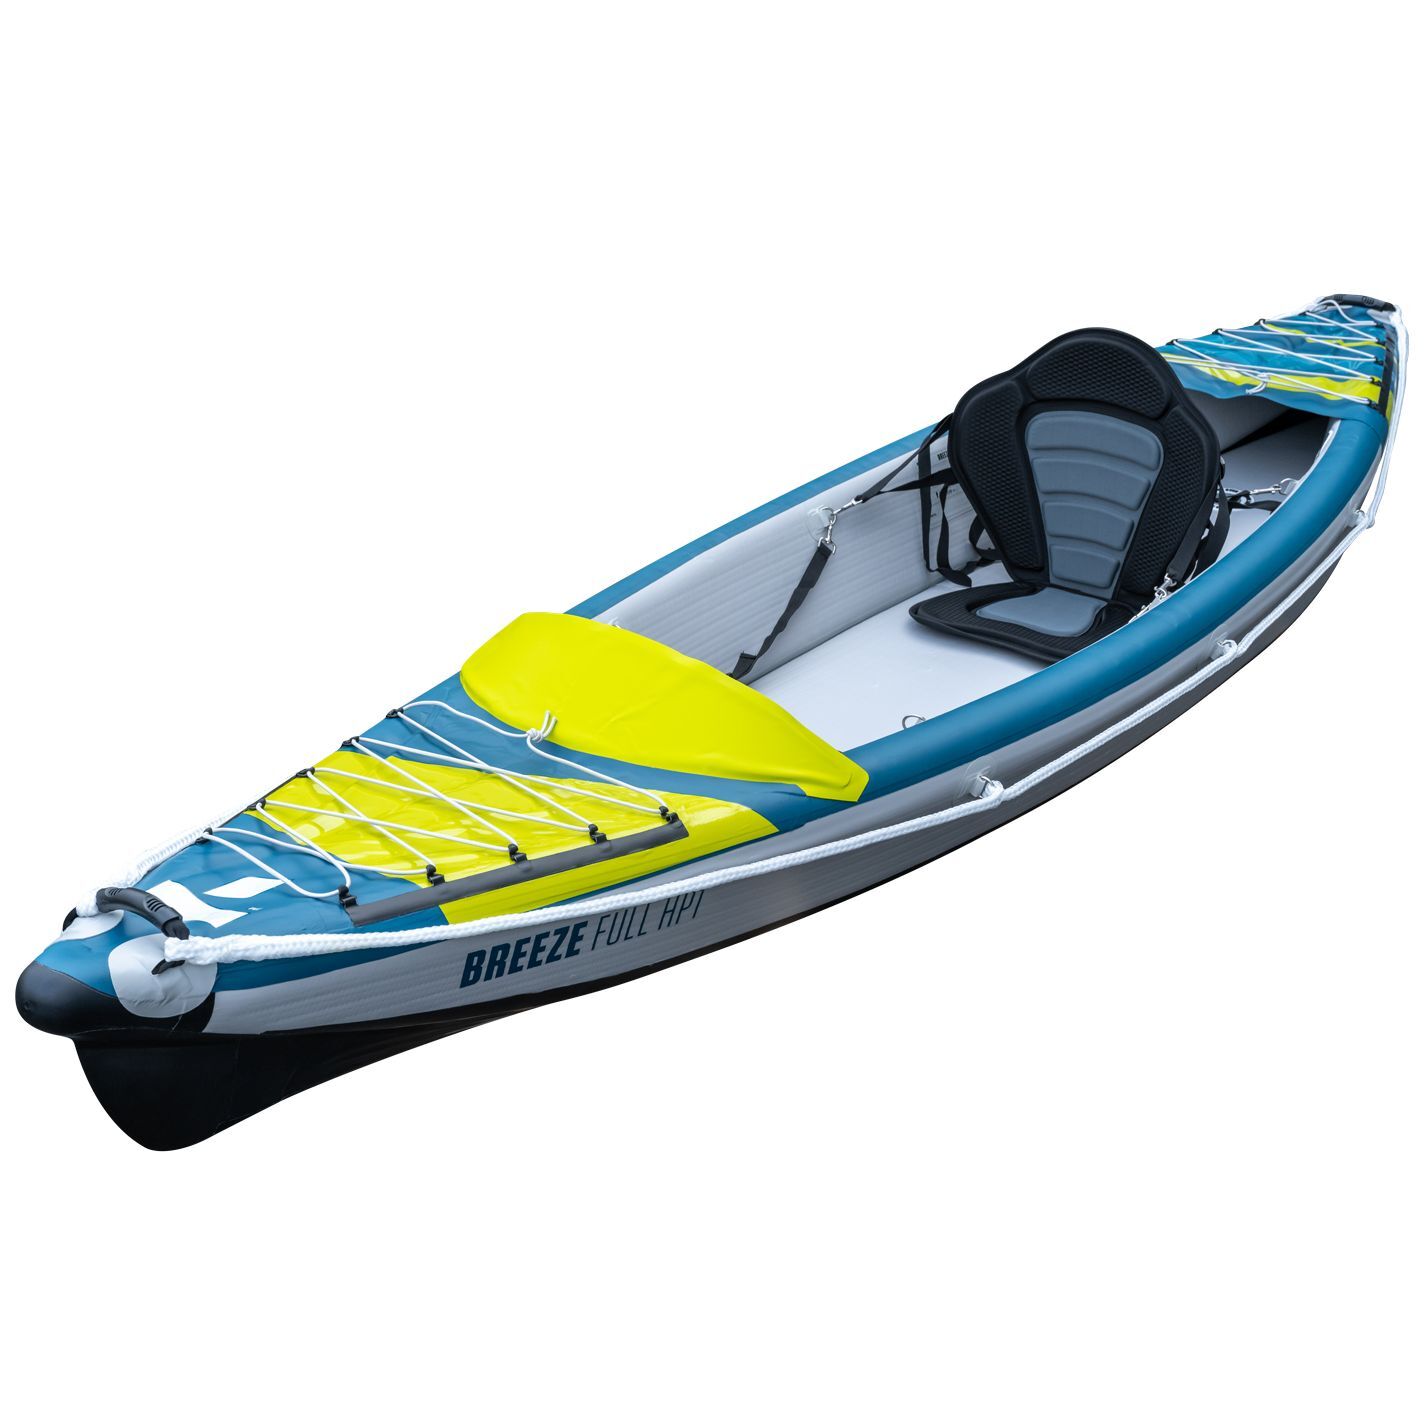 Tahe Outdoor Kayak Air Breeze Full Hp1 - Kayak gonfiabile